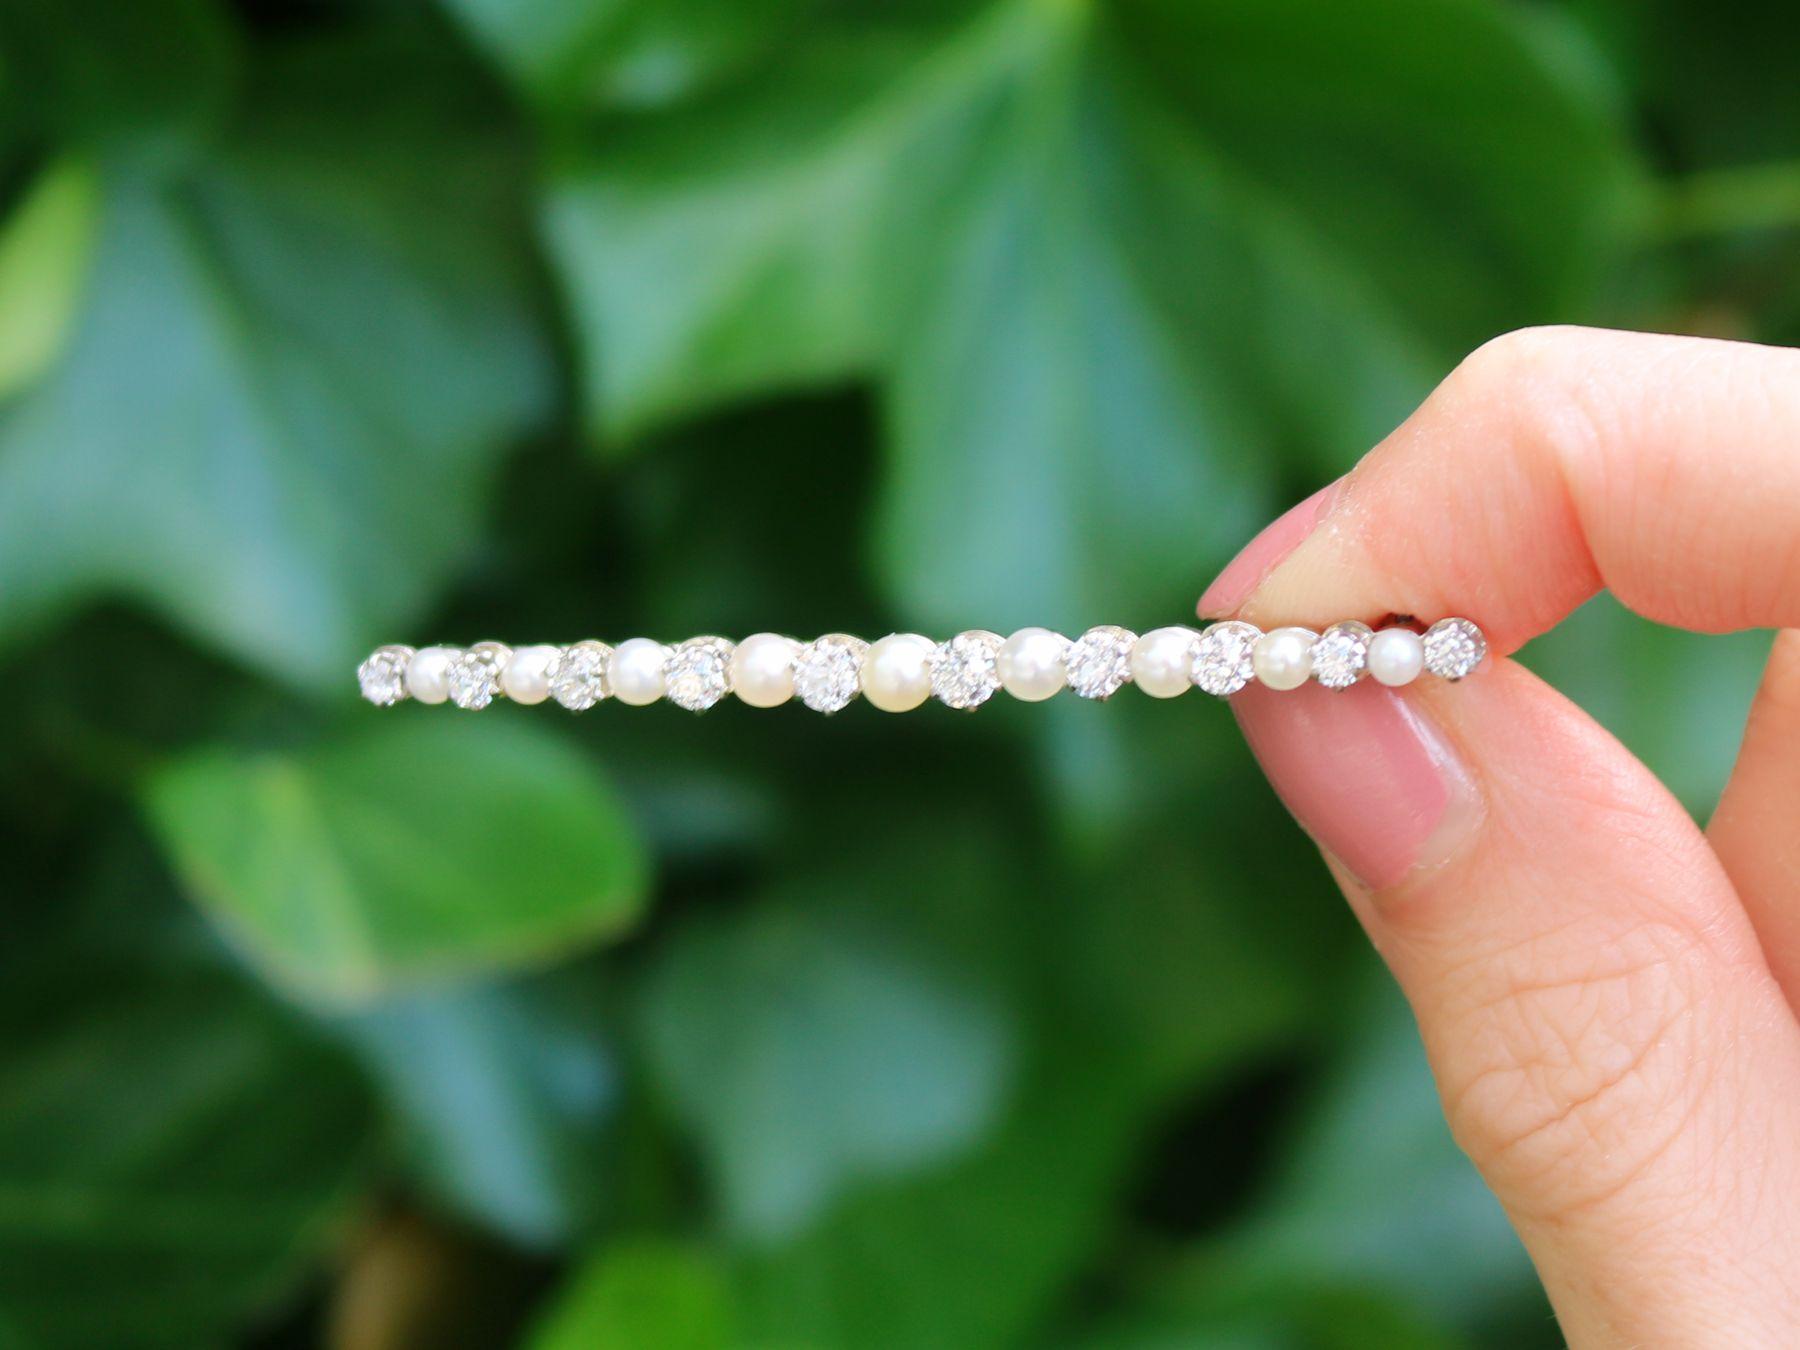 Une fine et impressionnante broche en perles et diamants de 1,01 carat, barrette en or blanc 15 carats ; faisant partie de notre gamme diversifiée de bijoux/bijoux anciens en pierres précieuses.

Cette broche en perles anciennes, fine et